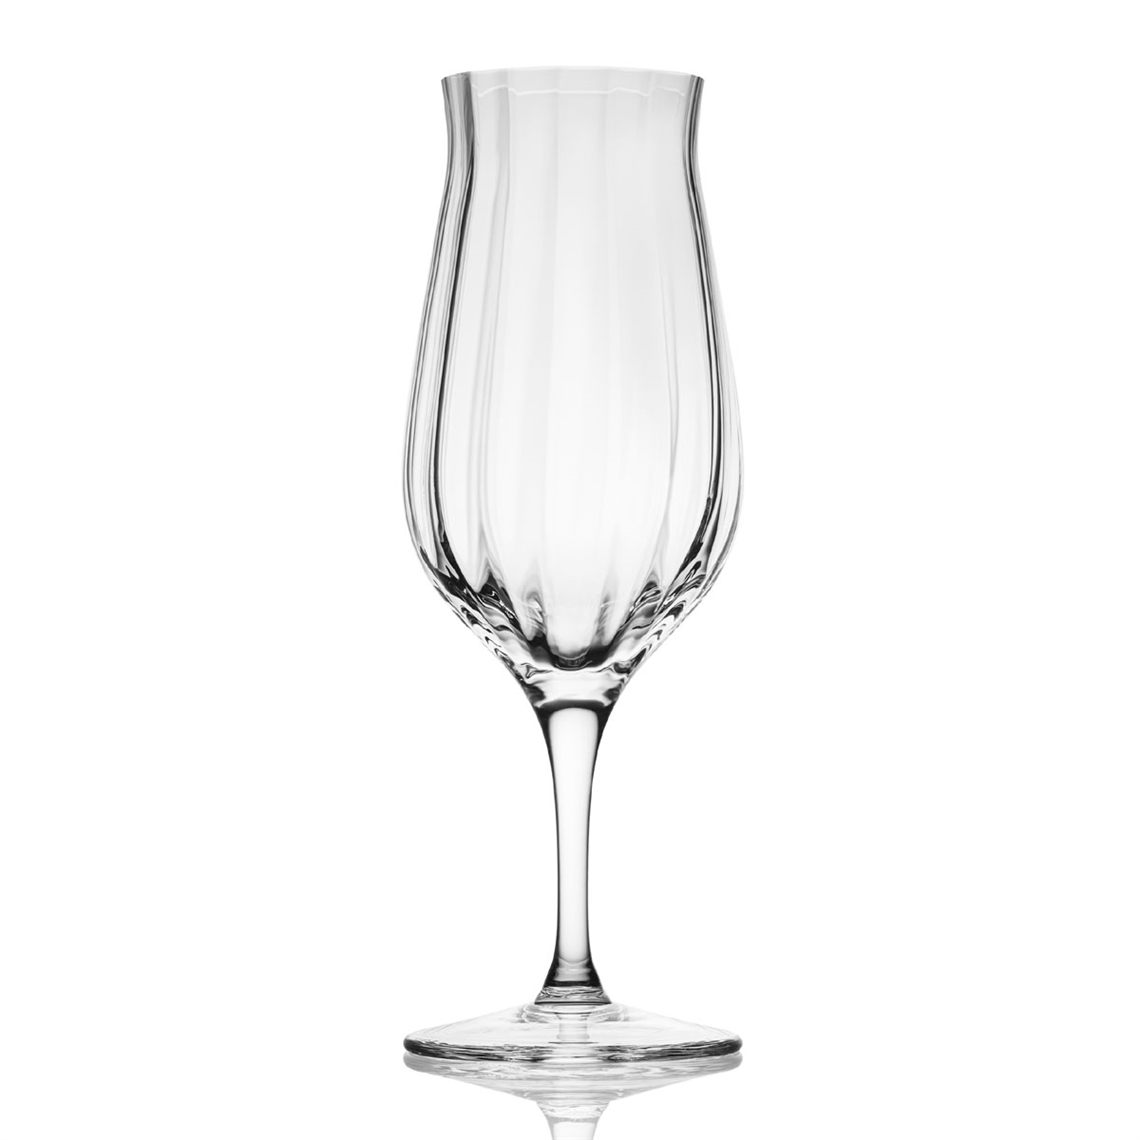 Amber Glass Whisky Tasting Glass Optic Effect - G120